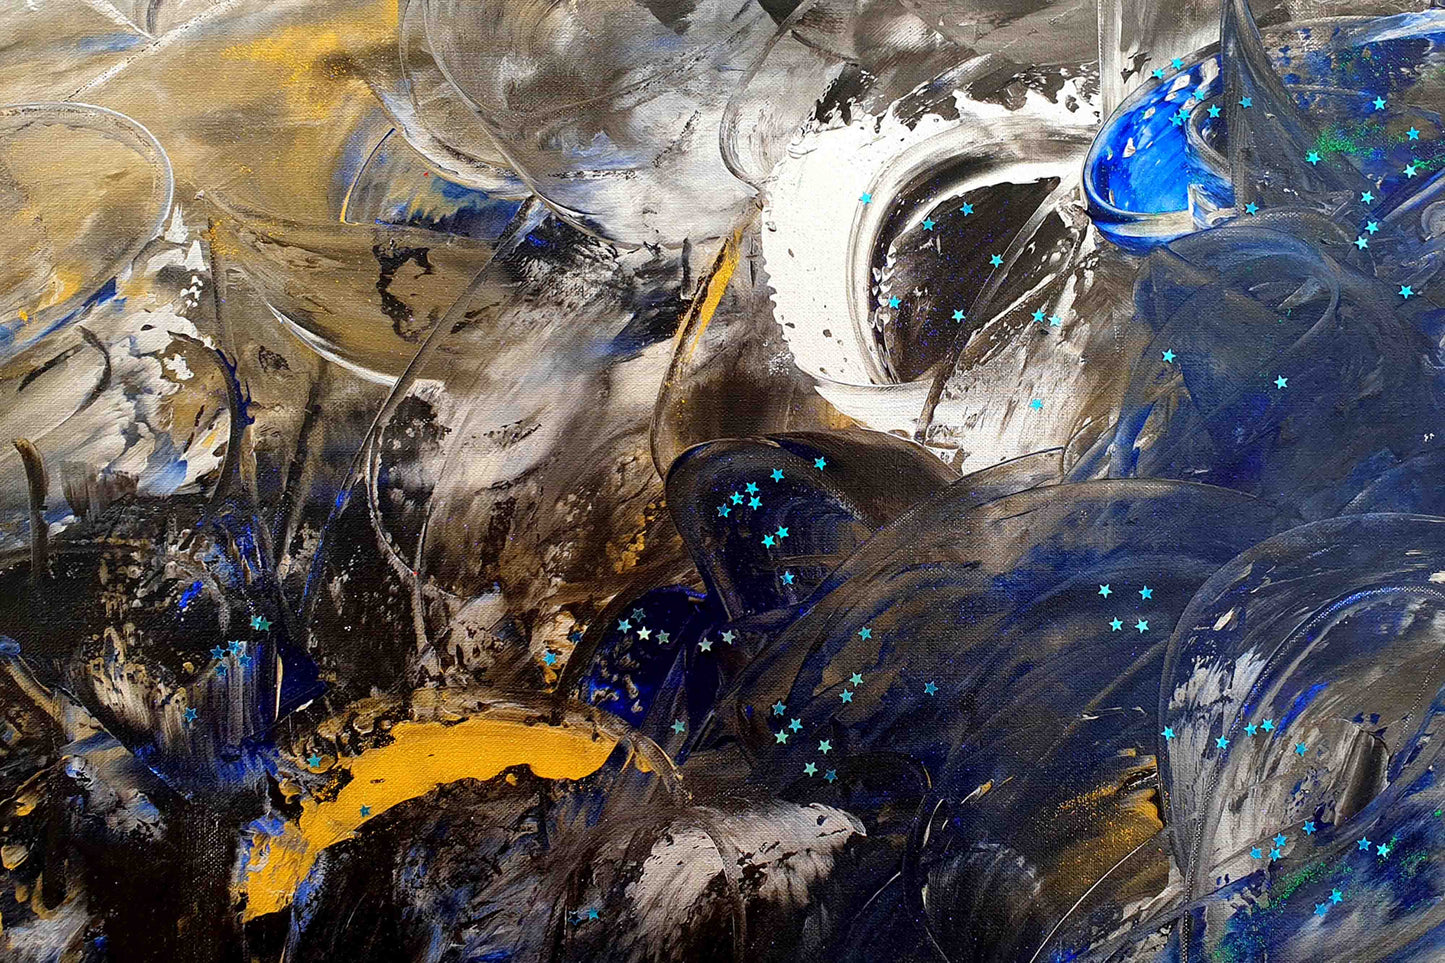 Motiv Kuscheldecke FEEL, Größe: 150 x 100 cm, Kobalt-Blau, Schwarz, Weiß, Silber, Gold